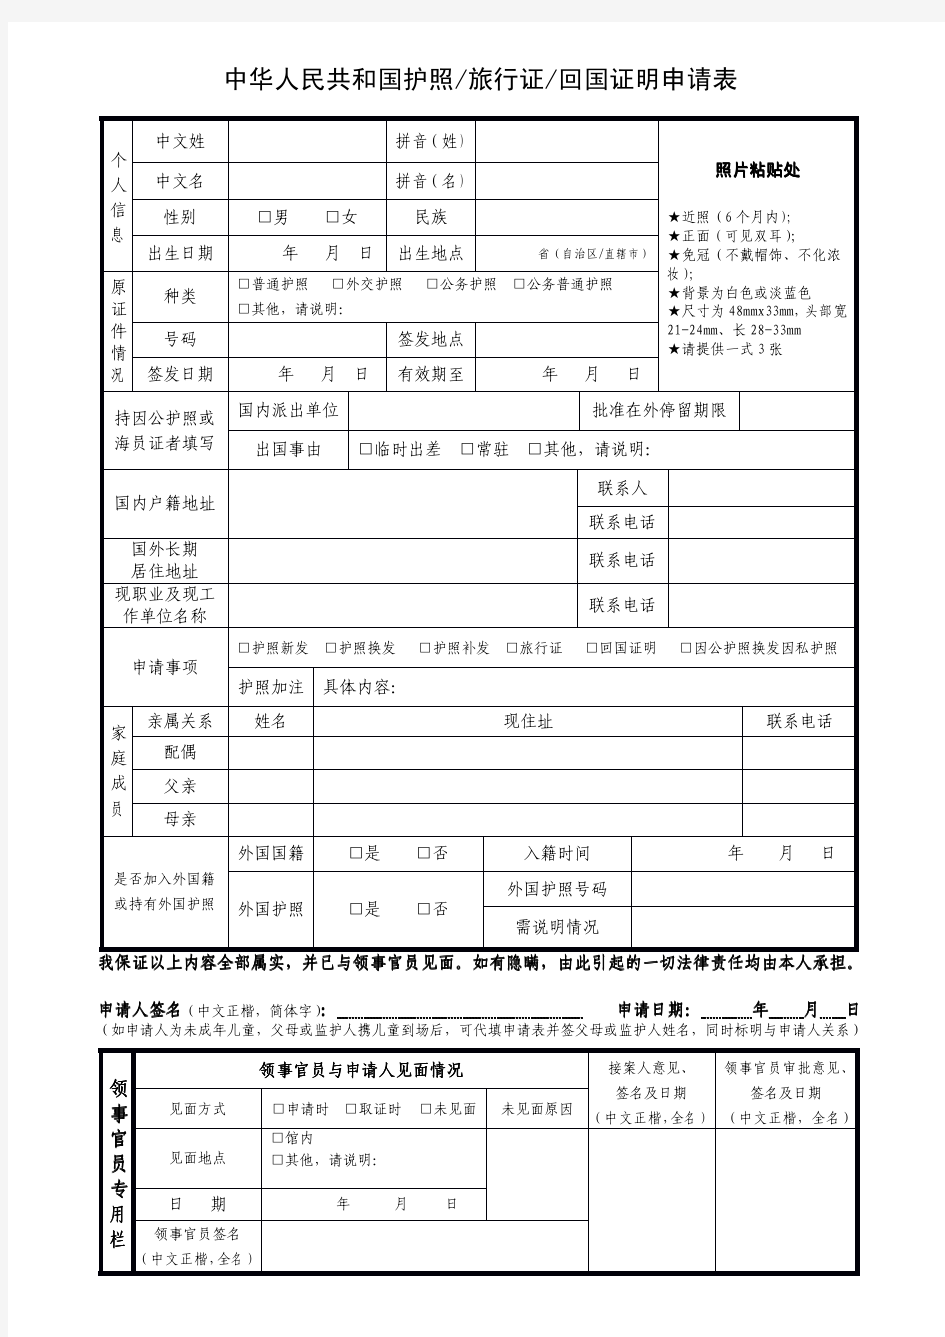 中华人民共和国护照、旅行证、回国证明申请表